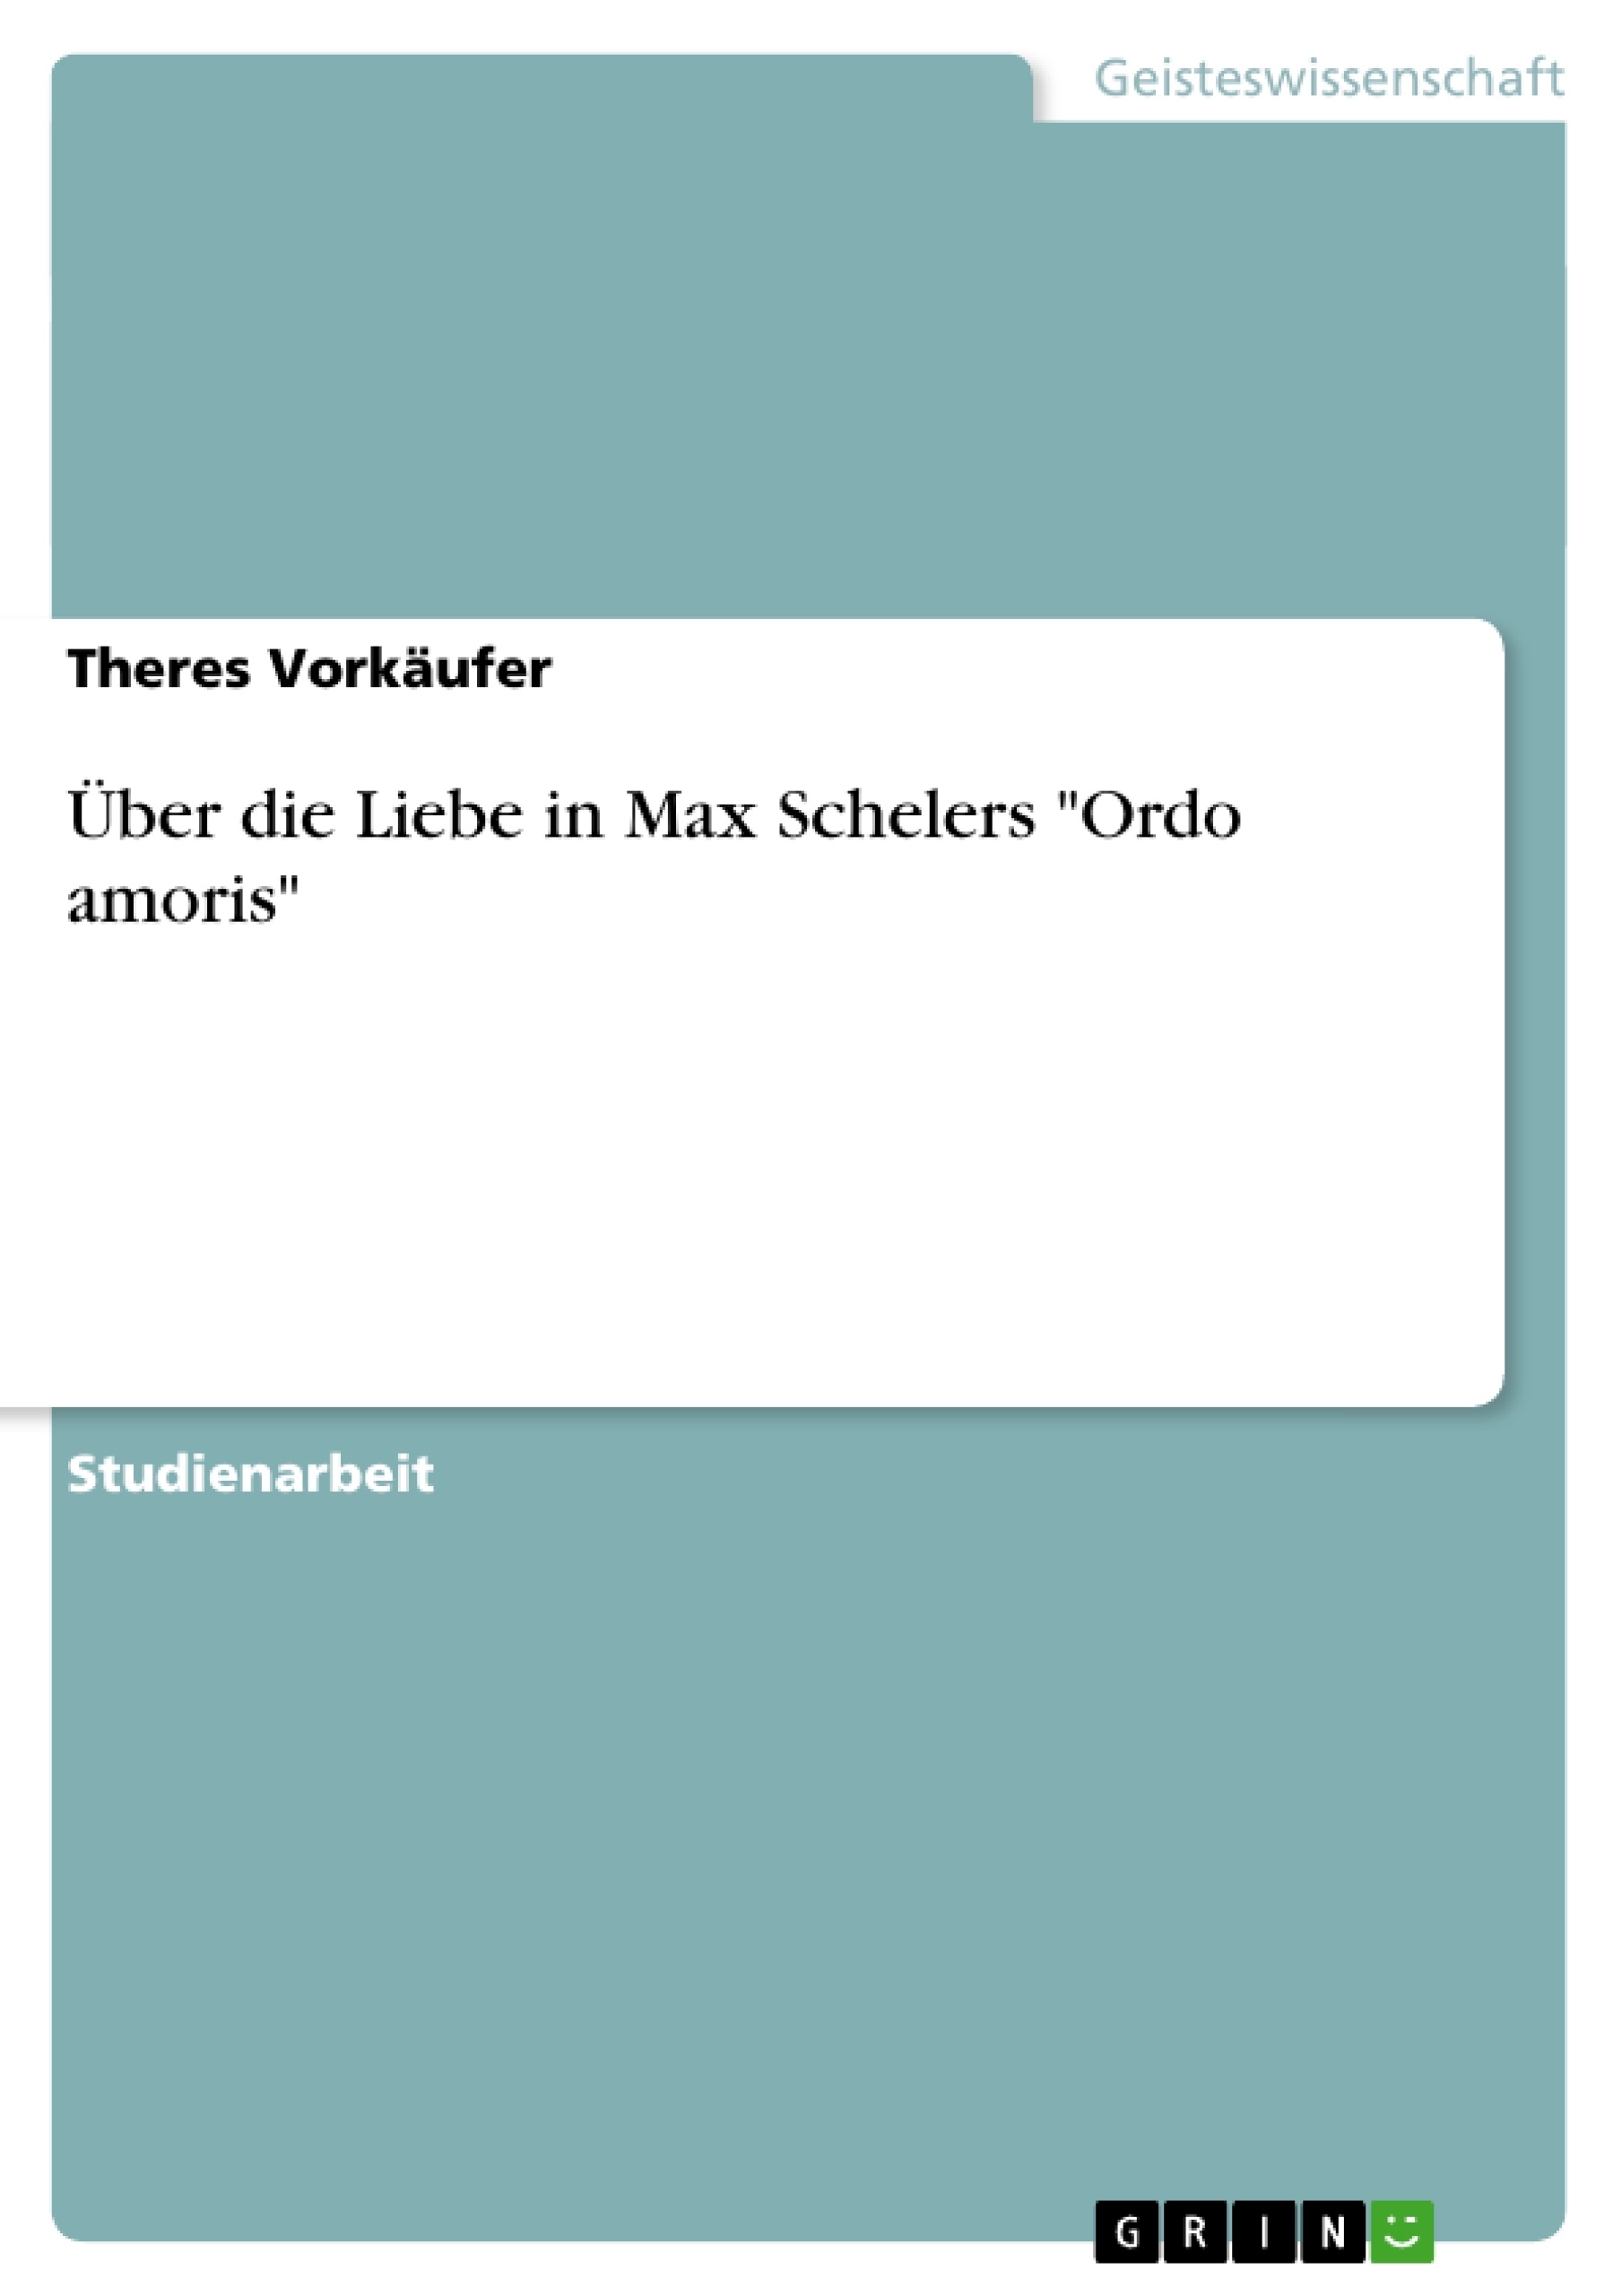 Titre: Über die Liebe in Max Schelers "Ordo amoris"